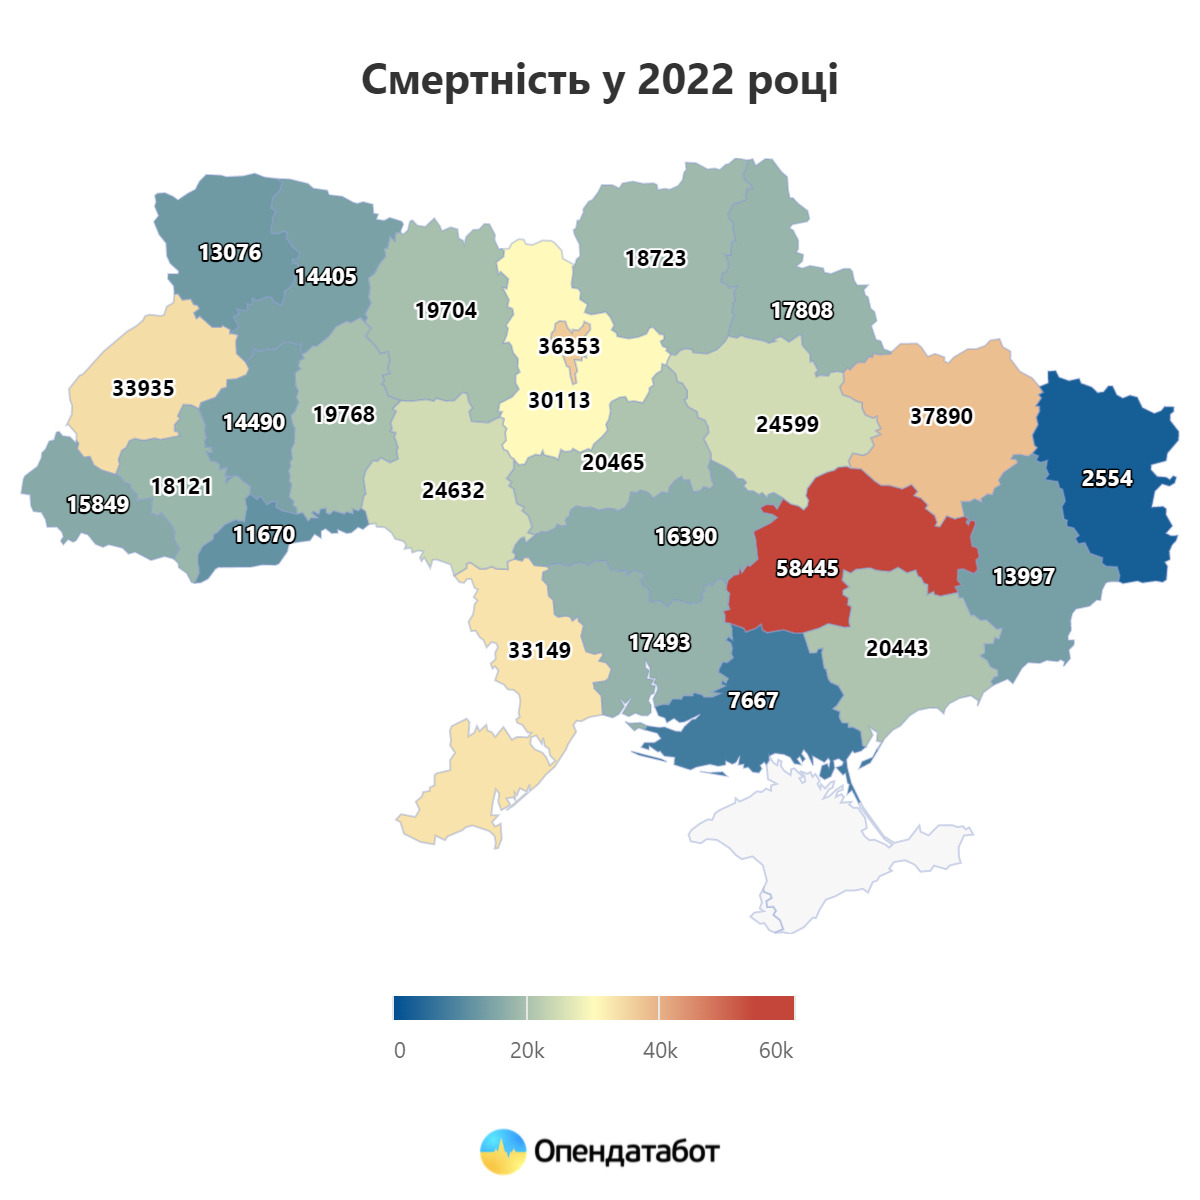 На 335 тисяч зменшилось населення України за 2022 рік, - Опендатабот 02